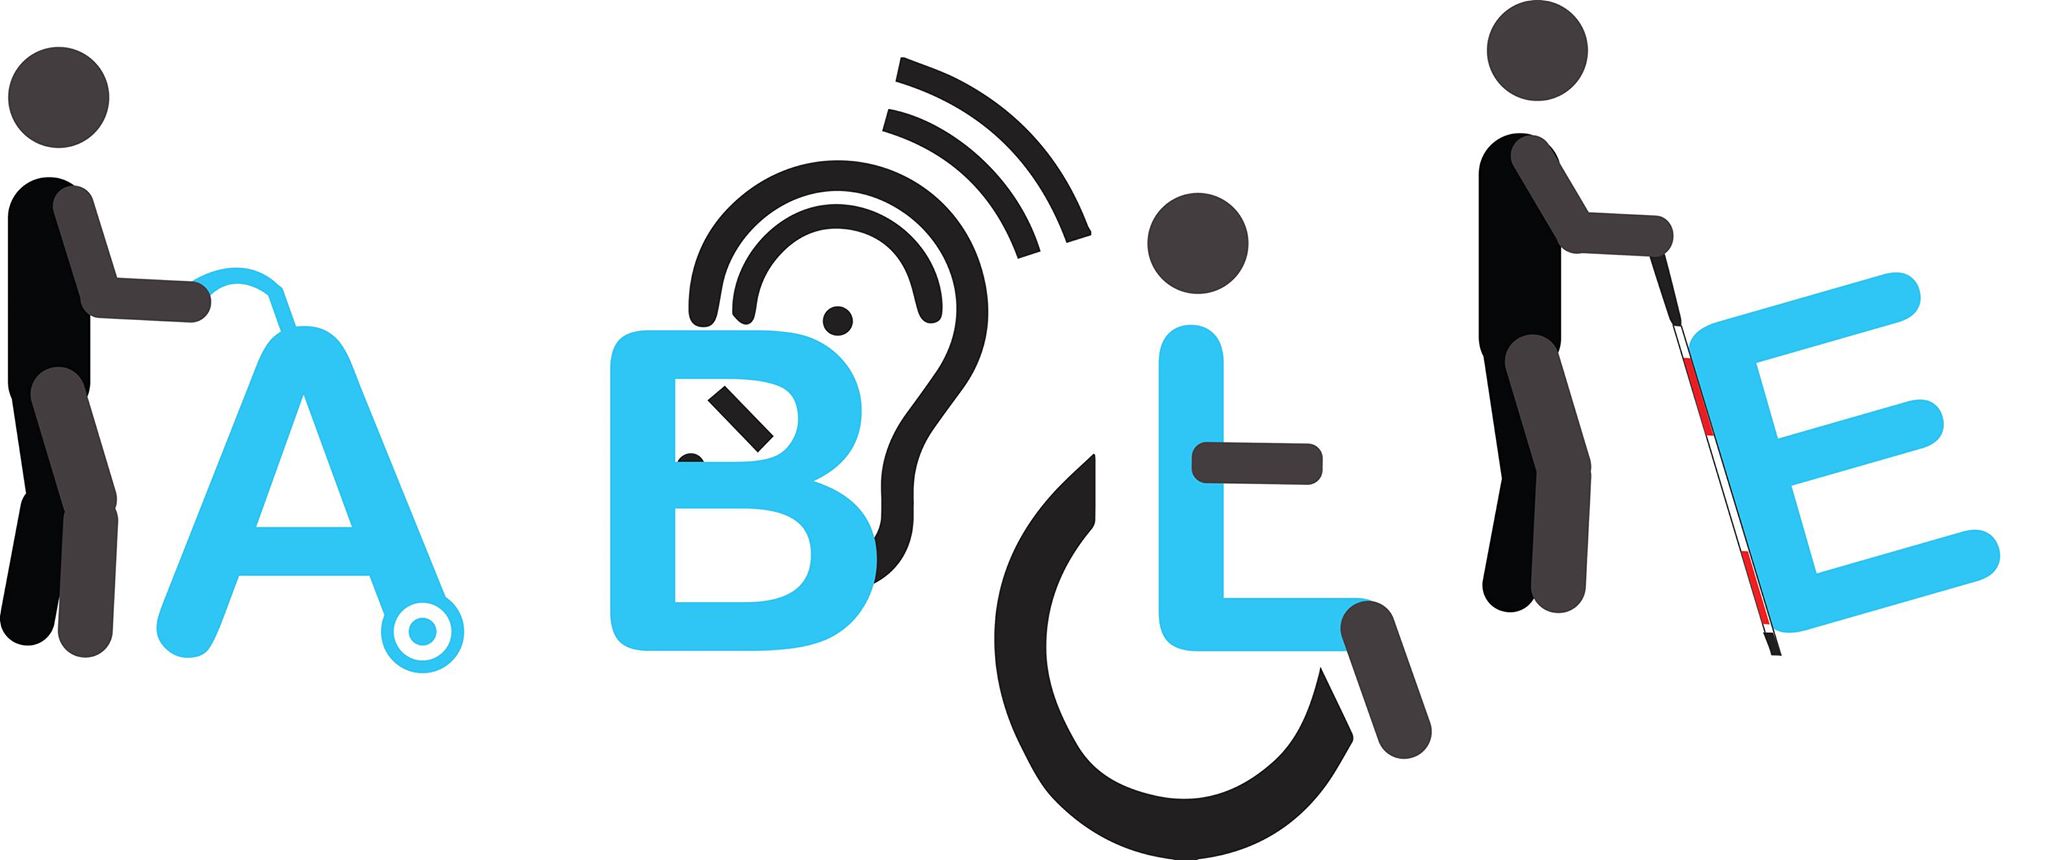 Дисабилити сайт для инвалидов. Disabled logo. Disability предложения. Целевая группа инвалиды лого.